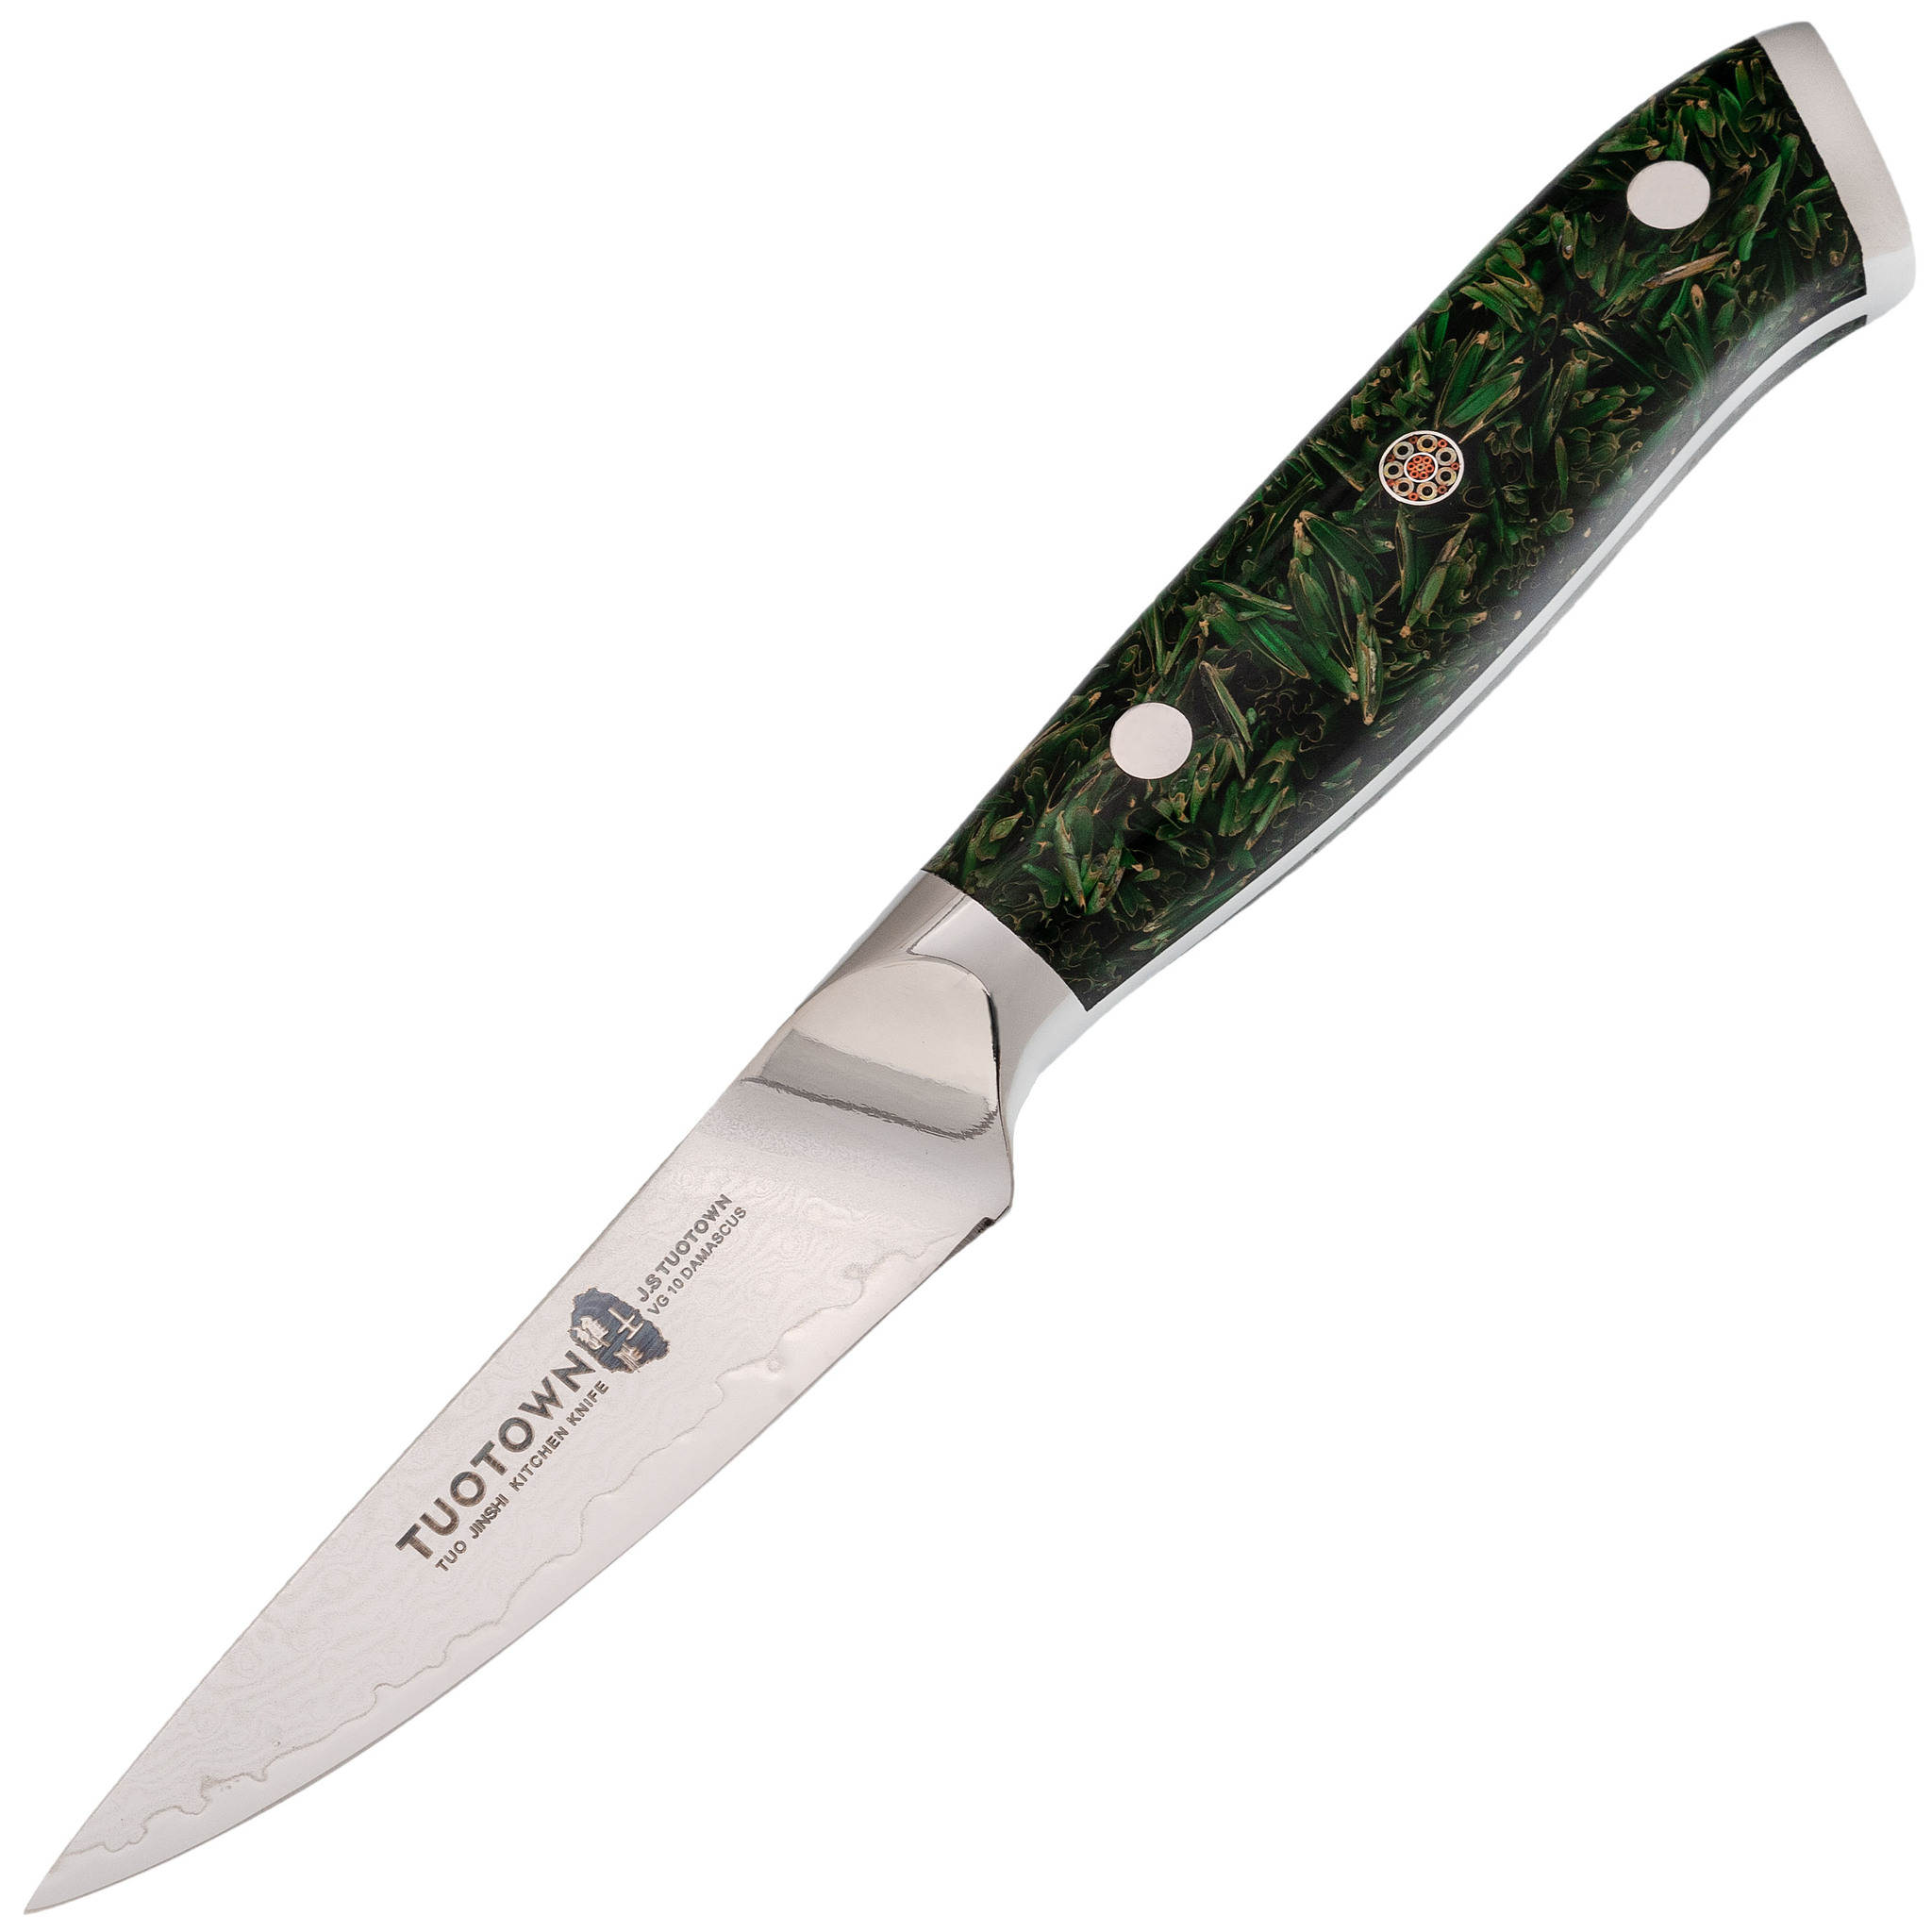 Кухонный нож Tuotown, сталь VG10, обкладка Damascus, рукоять акрил, зеленый